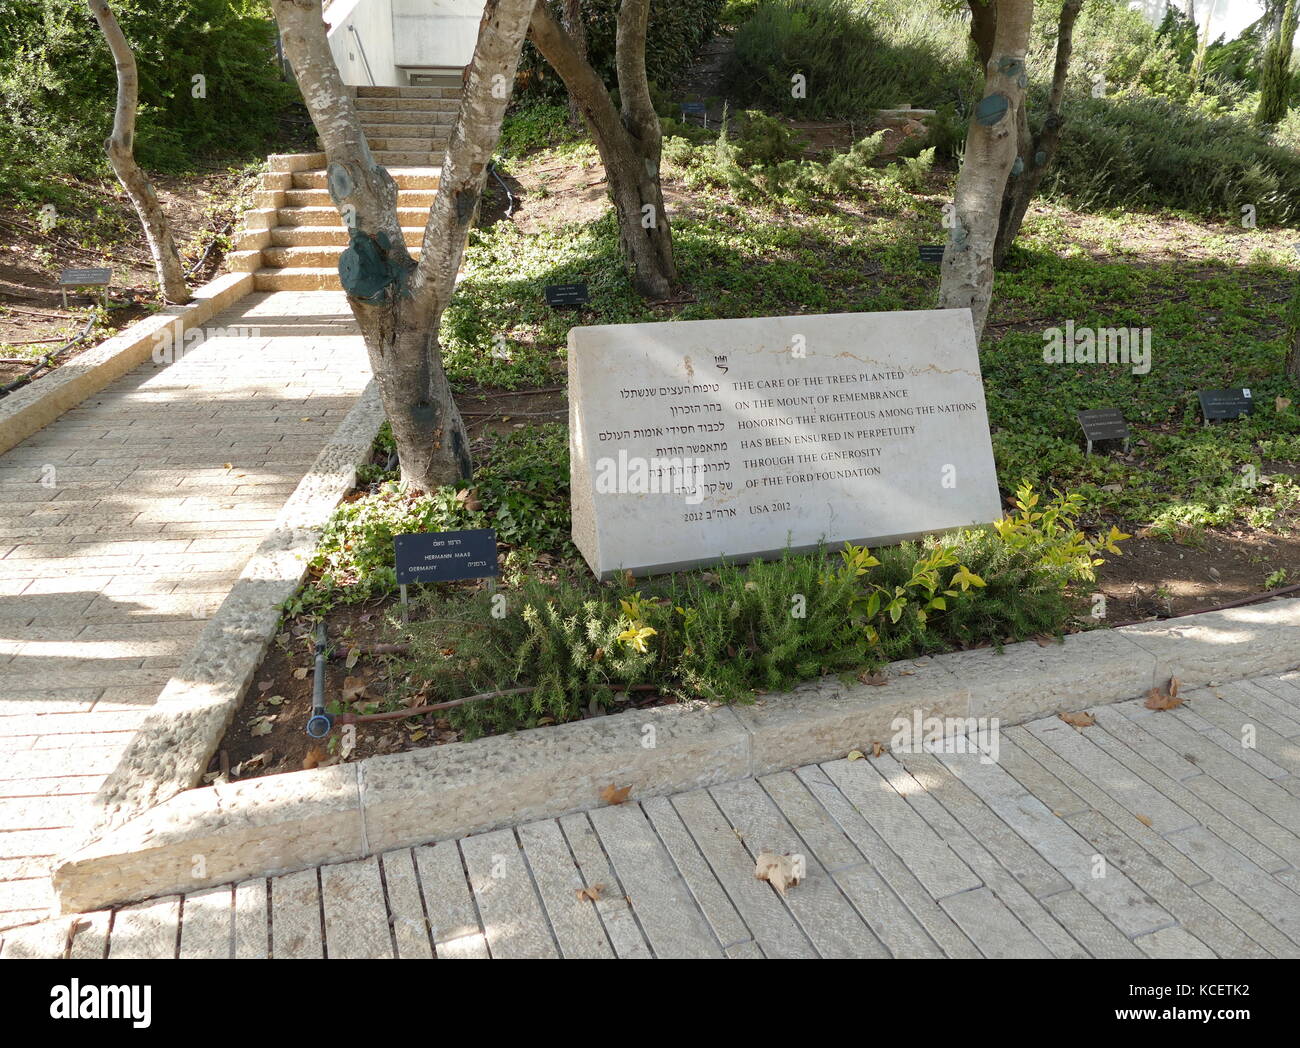 Ford Stiftung Denkmal in der Allee der Gerechten unter den Völkern, Yad Vashem, Jerusalem (Israel). Bäume sind rund um die Yad Vashem Website zu Ehren jener nicht gepflanzt - Juden, die ihr eigenes Leben riskieren, gespeichert Juden während des Holocaust. Stockfoto